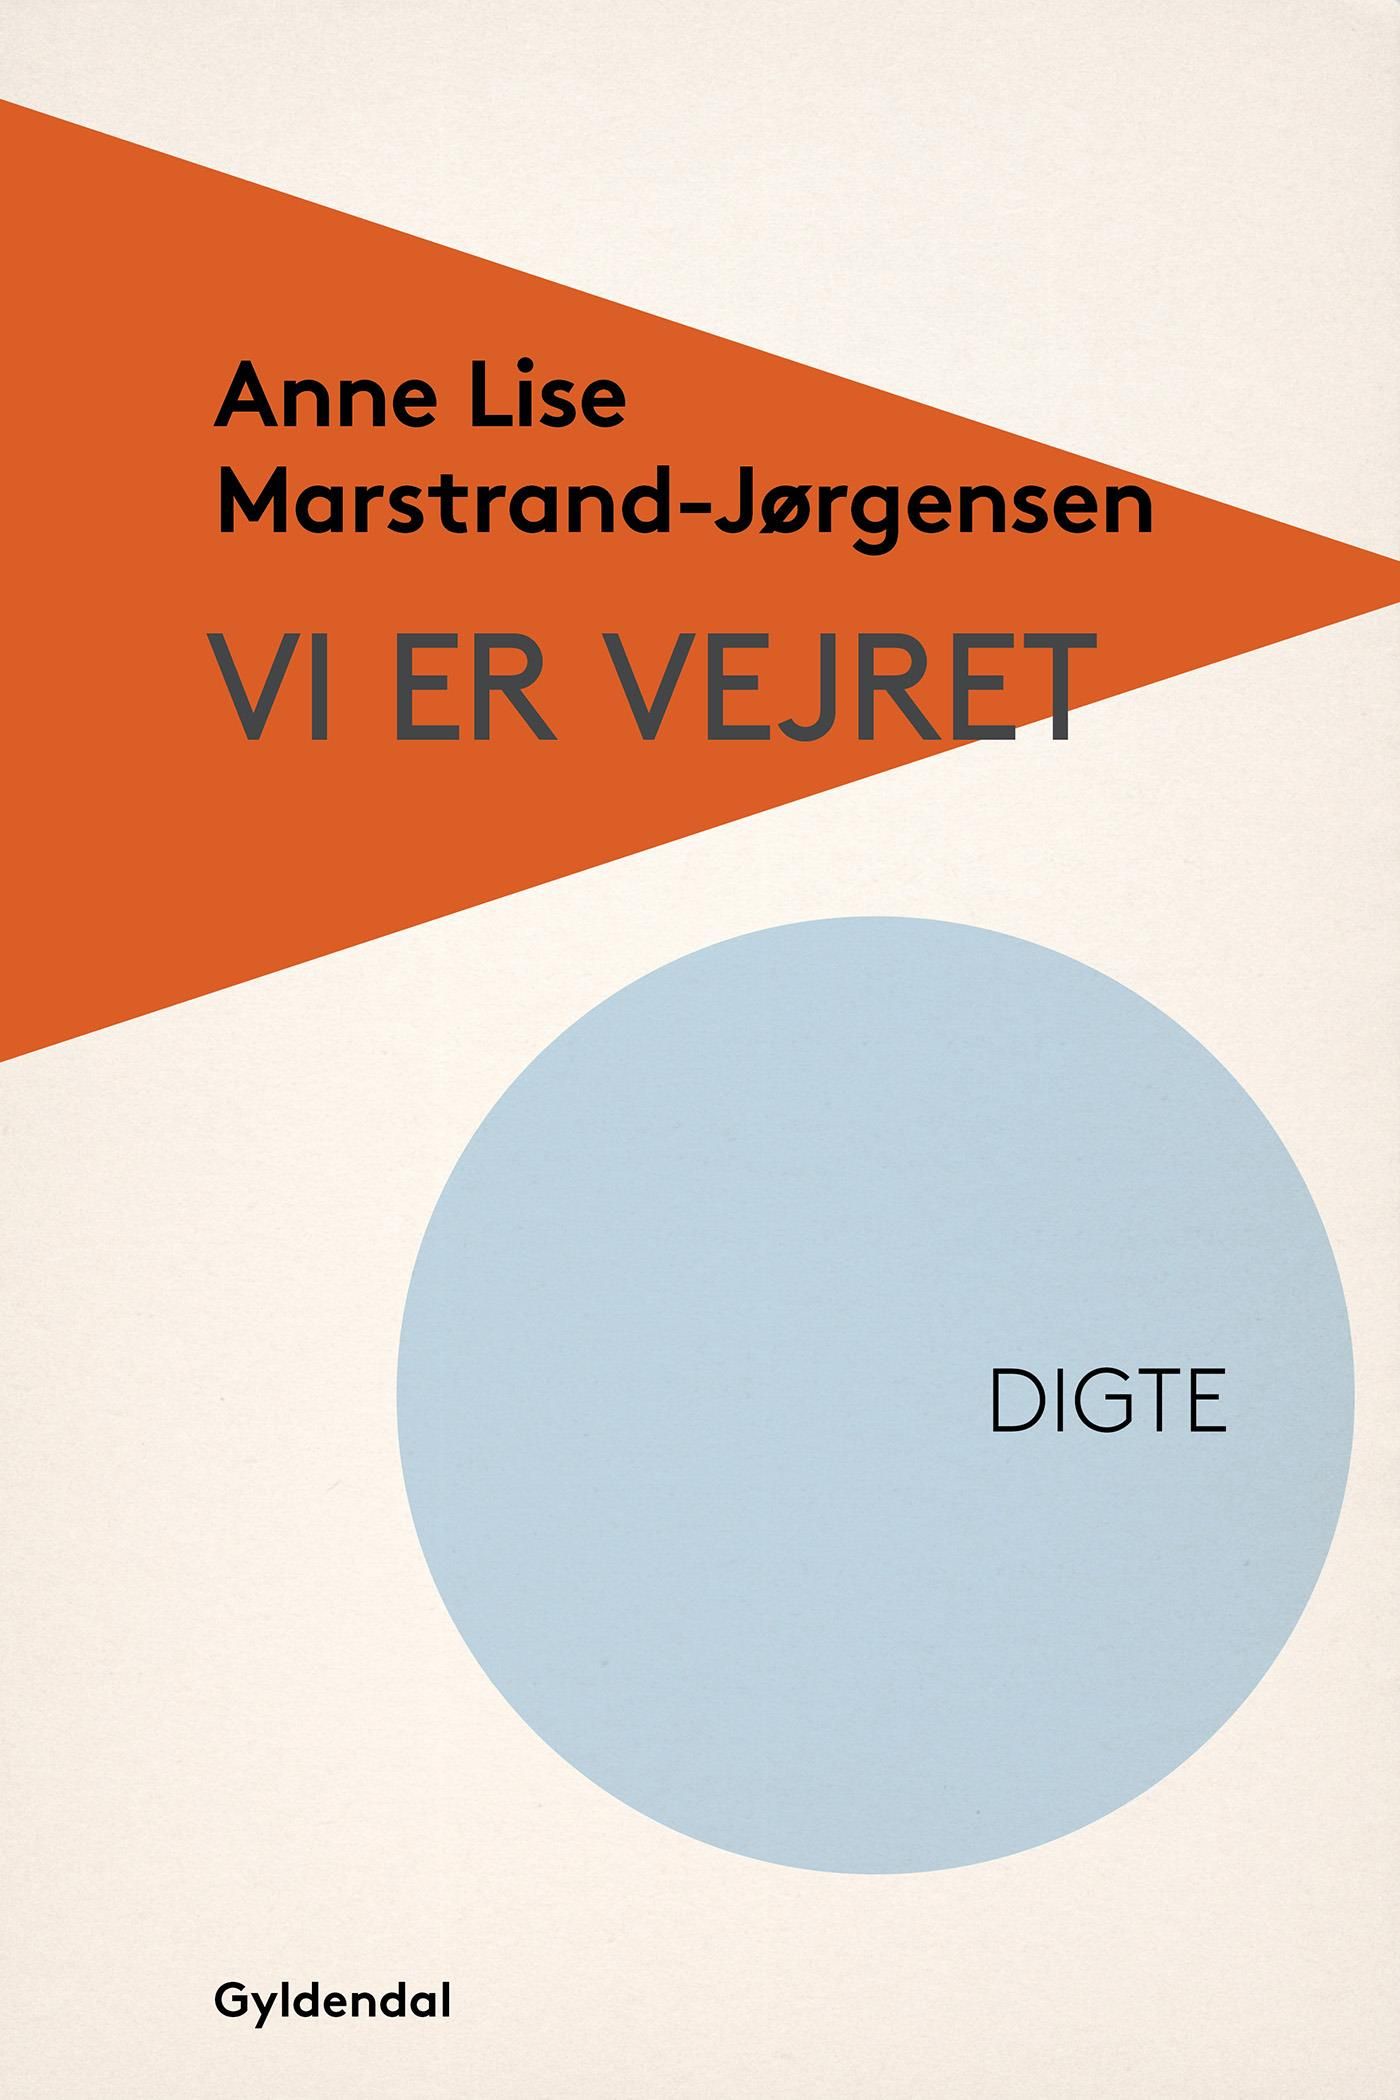 Vi er vejret, e-bok av Anne Lise Marstrand-Jørgensen